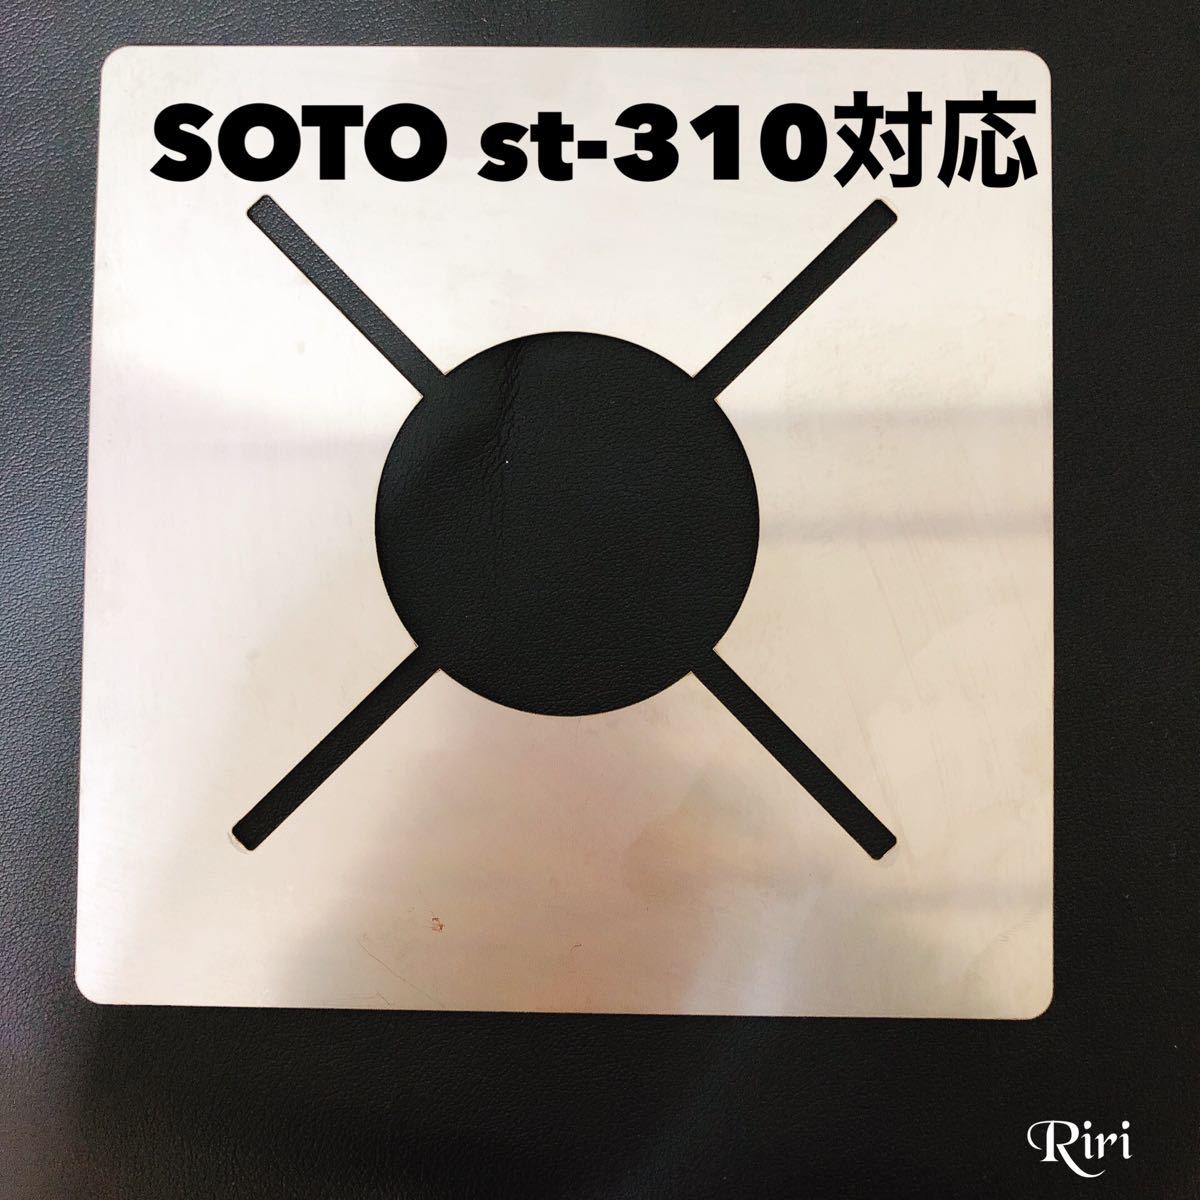 SOTO/ST310にフィットする防風/オリジナル遮熱板/黒シリコンチューブ/3点セット